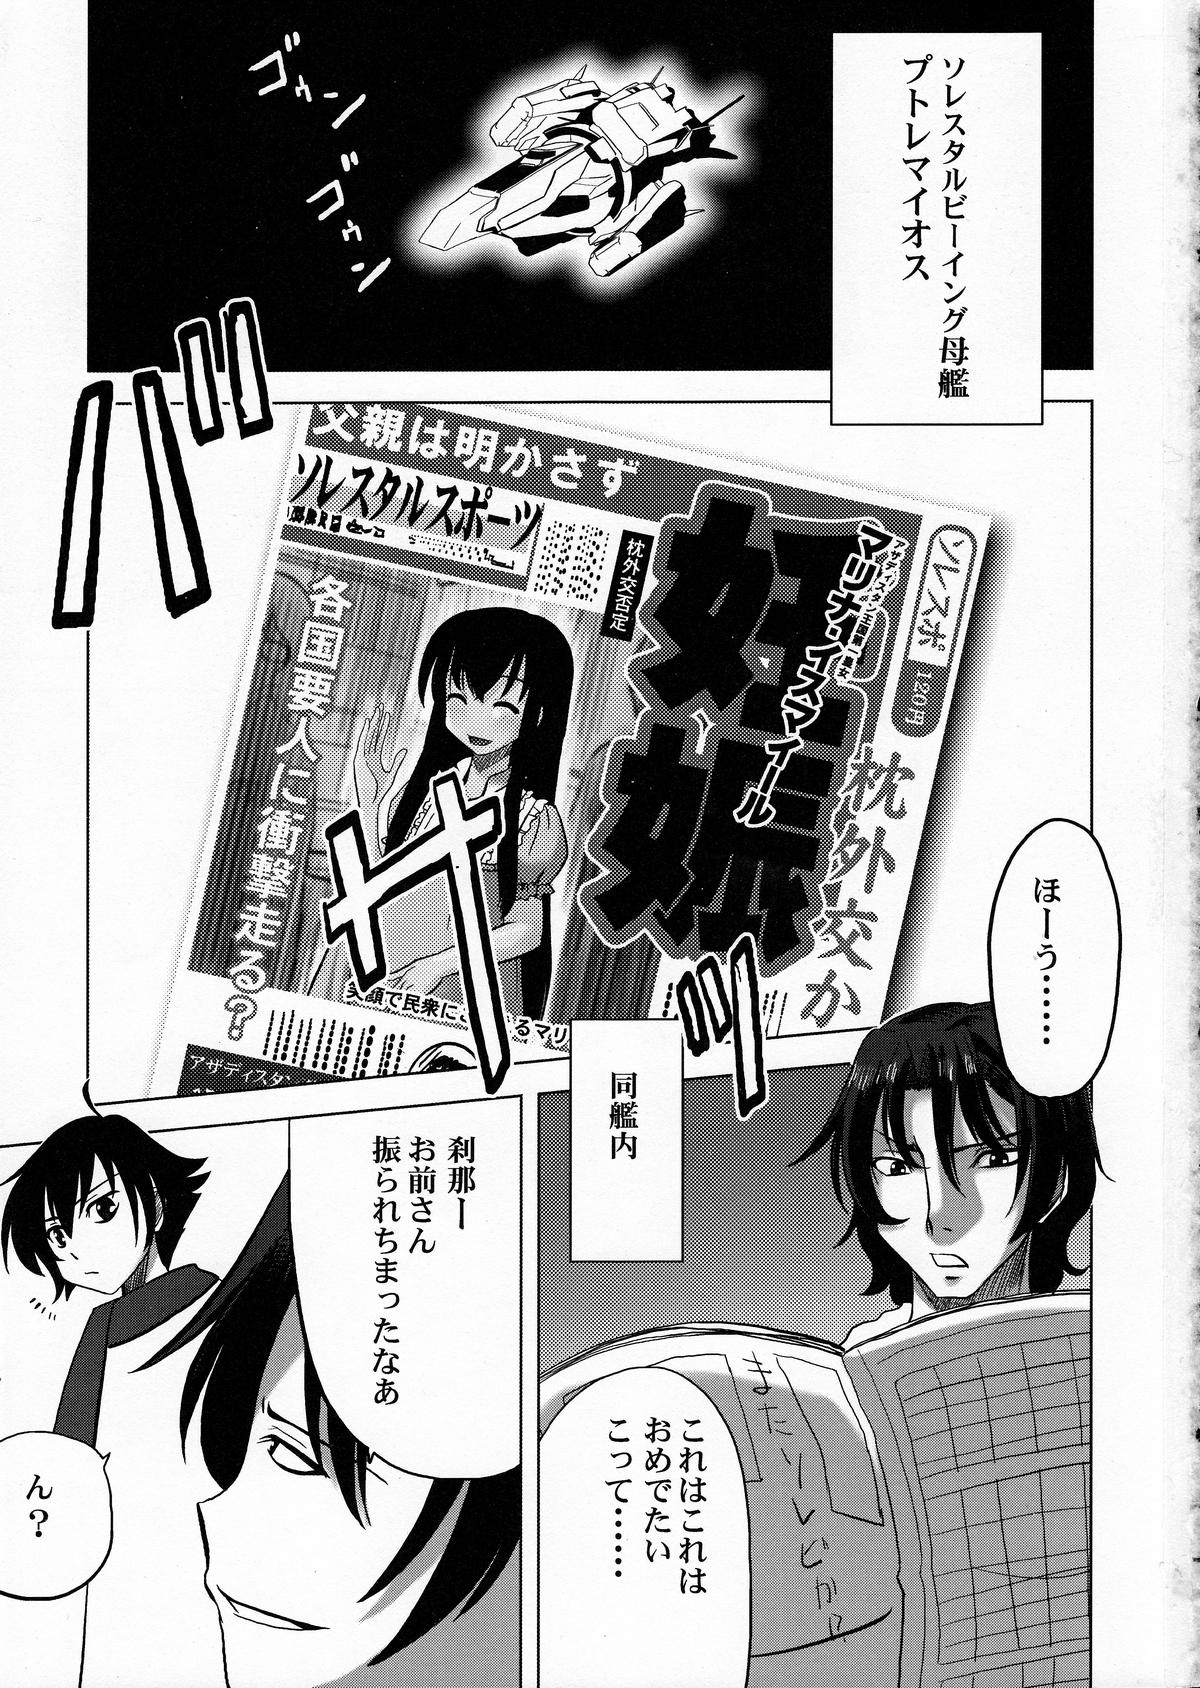 Bathroom Maguro Kingdom 2009 - Gundam 00 Hunks - Page 2